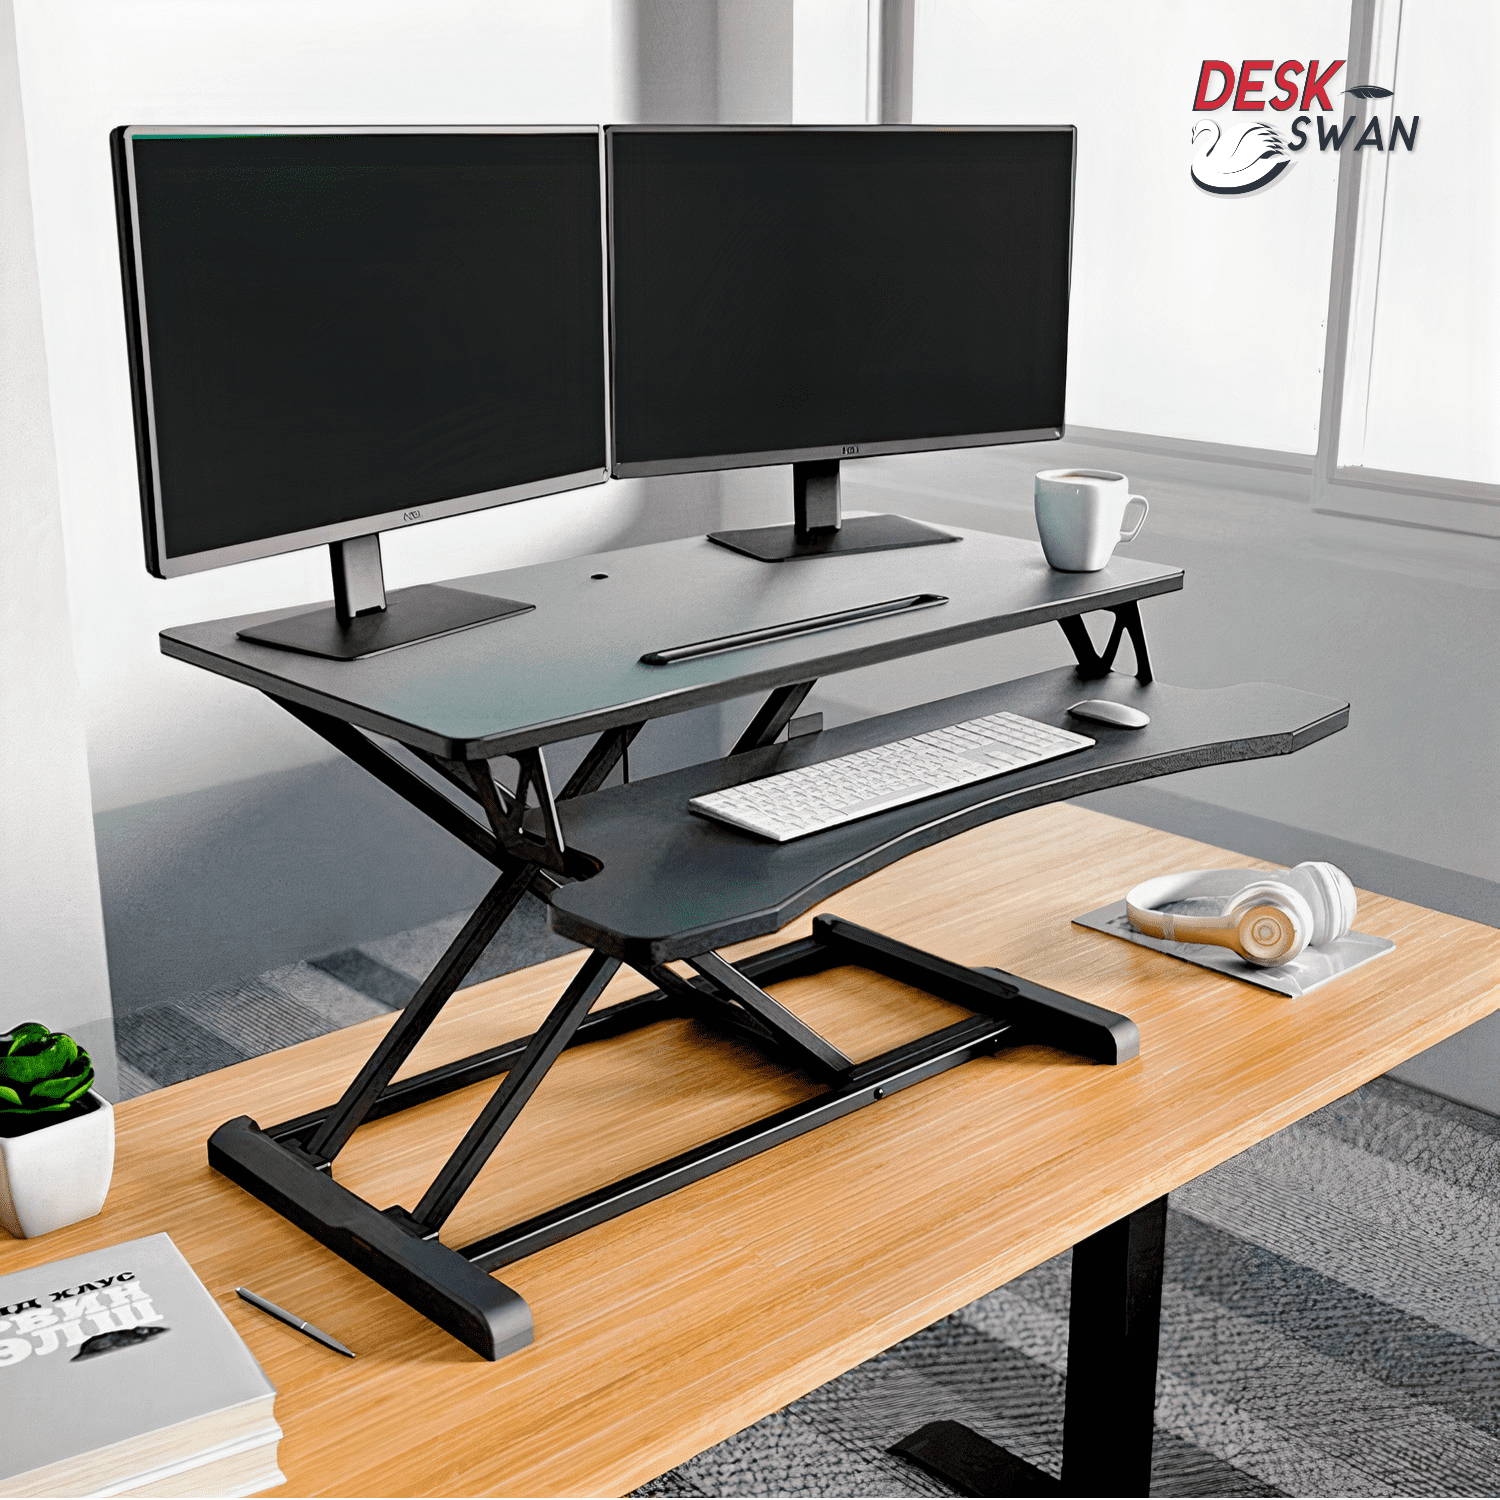 Standing Desk Converter, Best Desk Riser, Best Standing Desk 2021